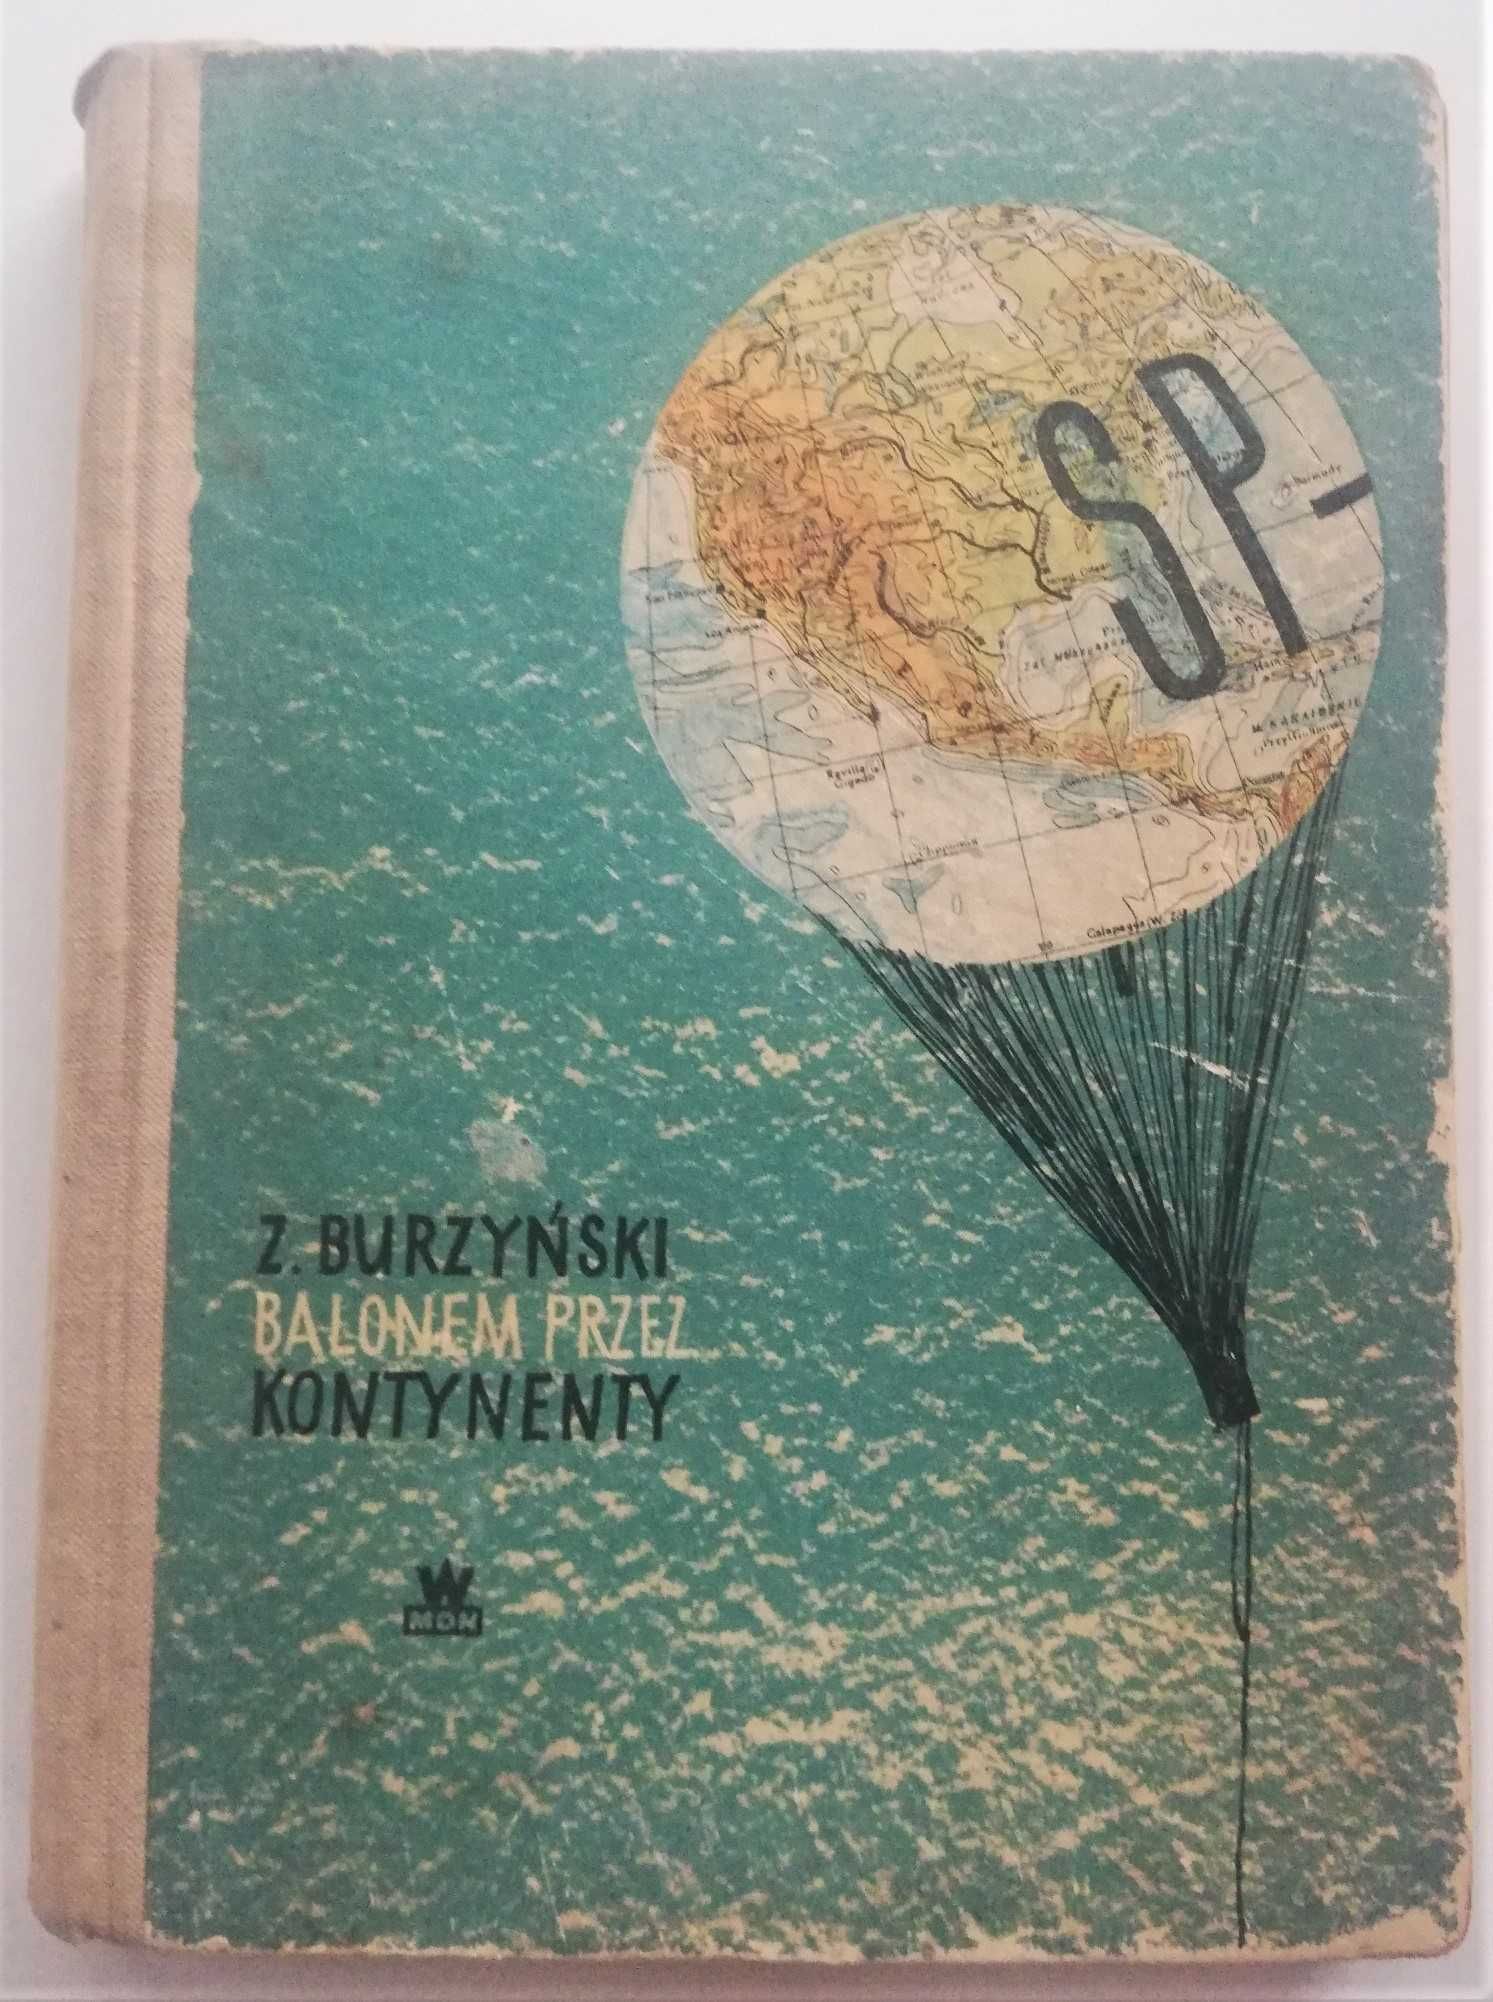 „Balonem przez kontynenty” Zbigniew Burzyński   1956 r.